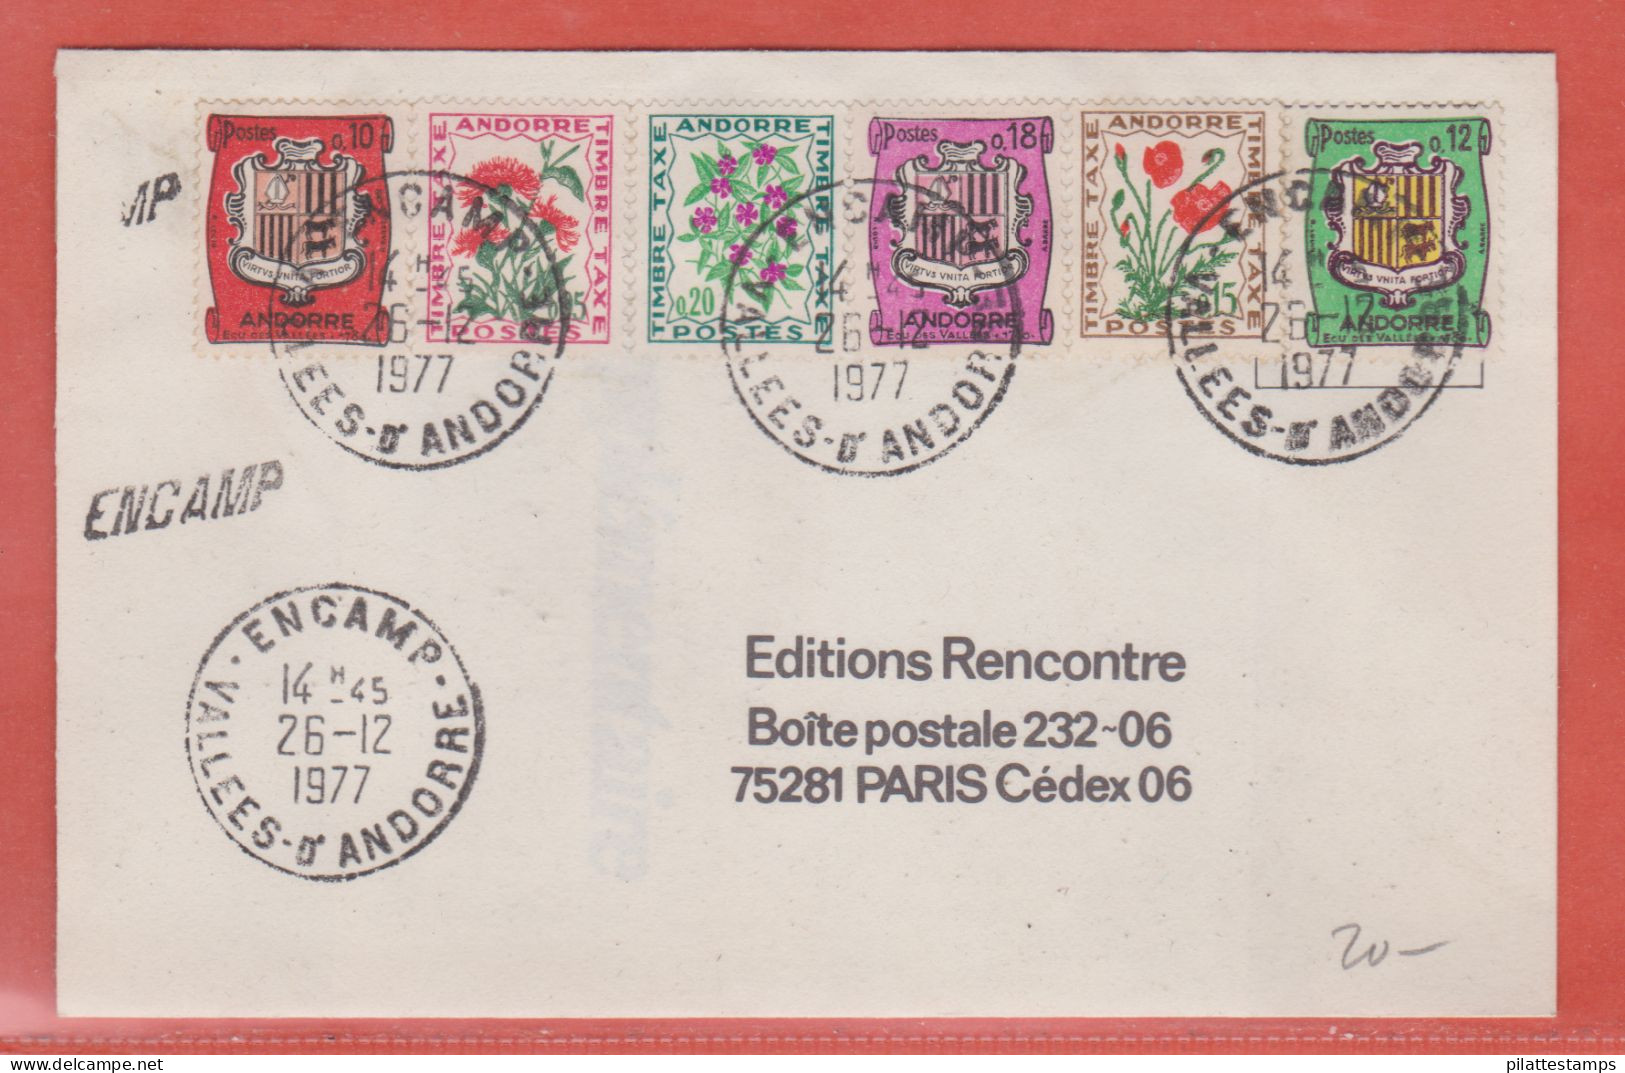 ANDORRE LETTRE DE 1977 DE ENCAMP POUR PARIS FRANCE - Briefe U. Dokumente